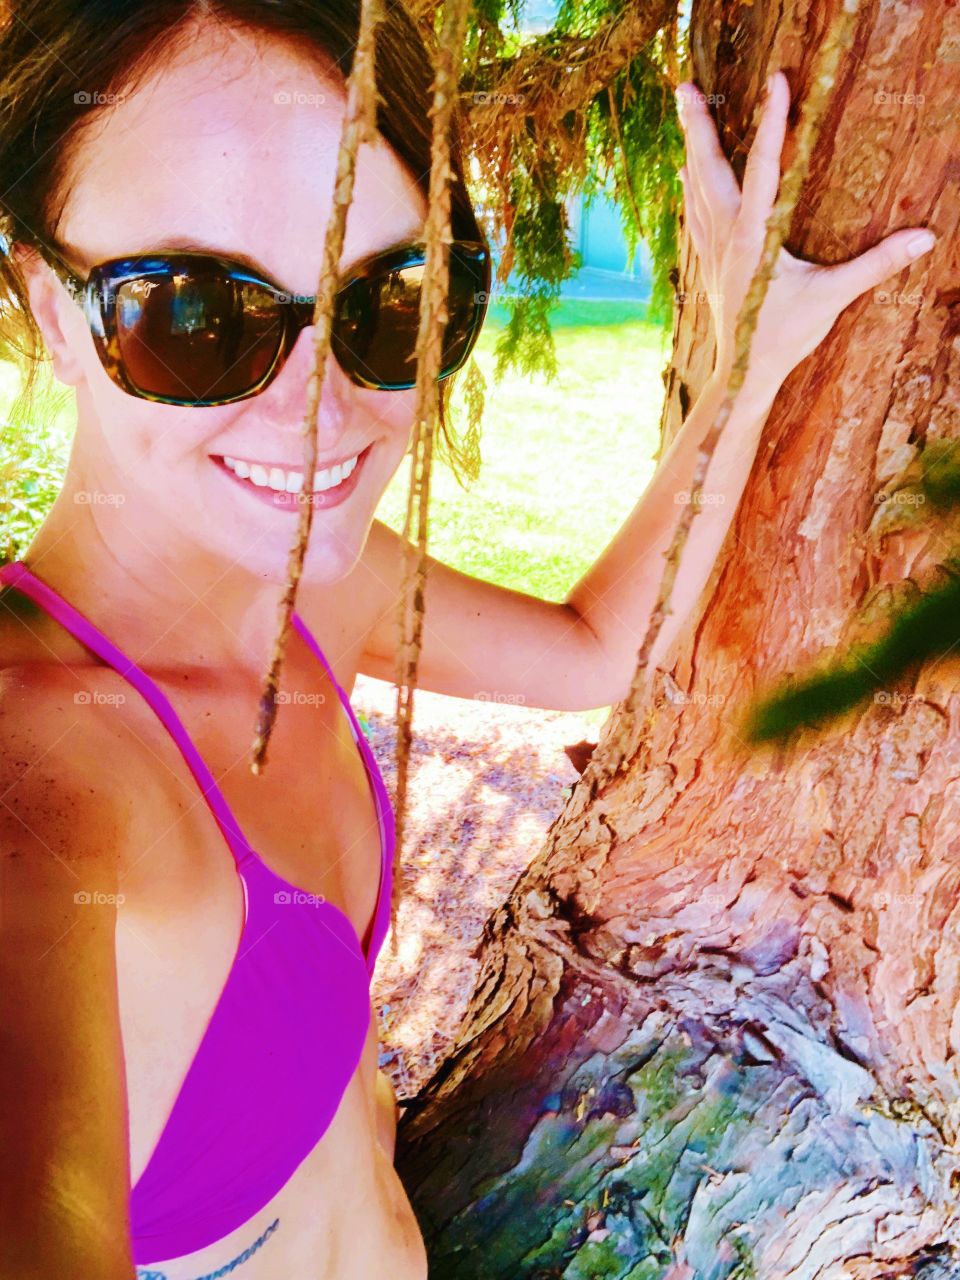 Hot pink bikini girl just climbing a tree 